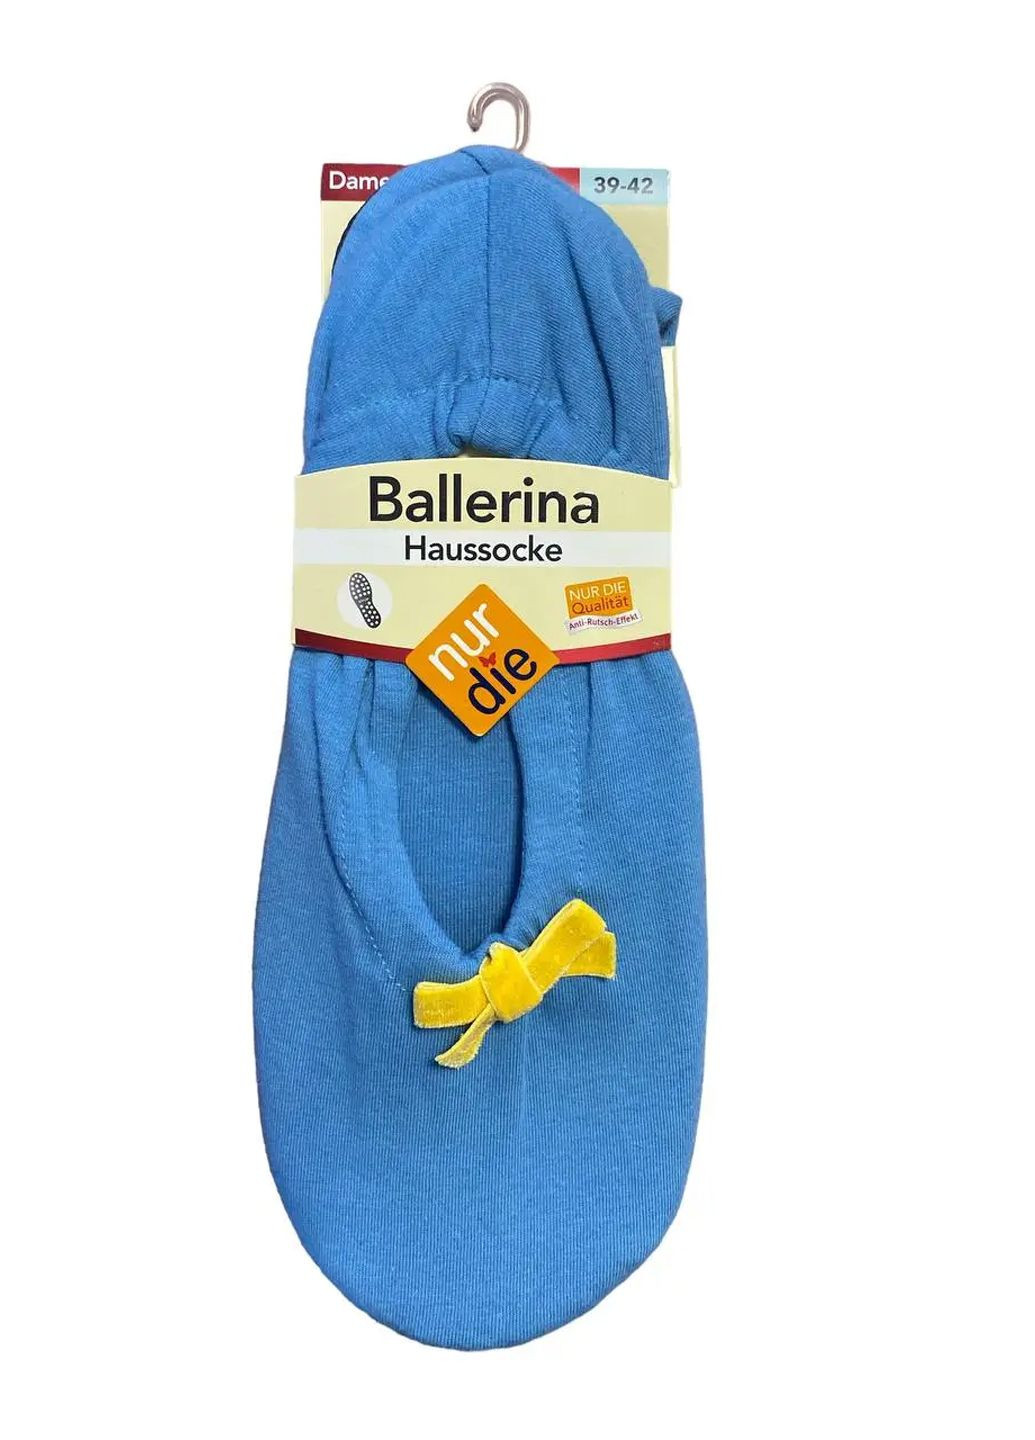 Голубые женские домашние тапочки-балетки ballerina houssocke р.39-42 голубые (496847) Nur Die с бантом